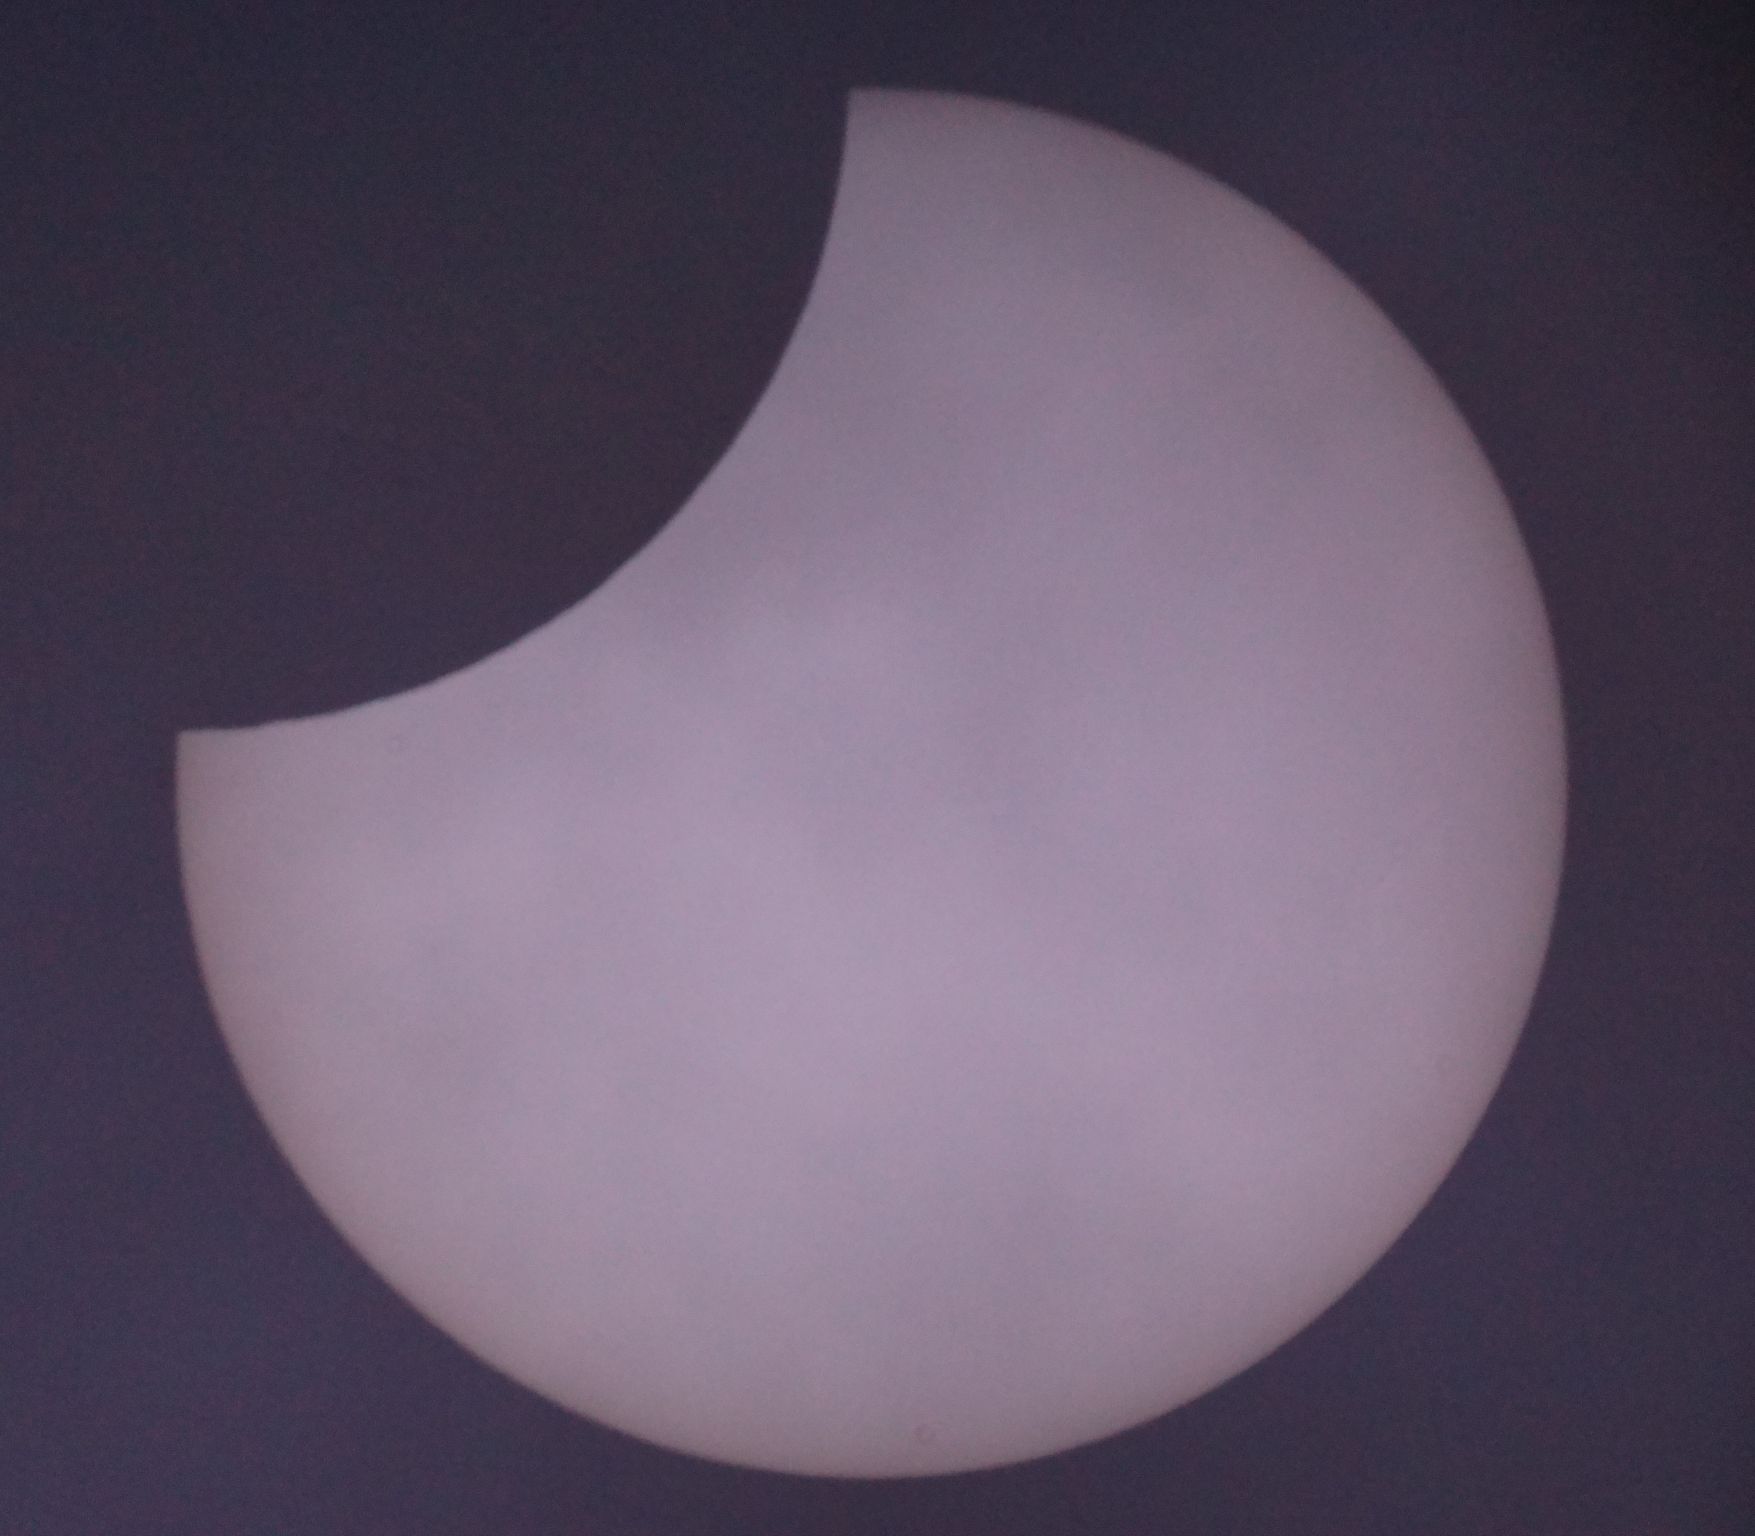 Eclipse photograph through telescope